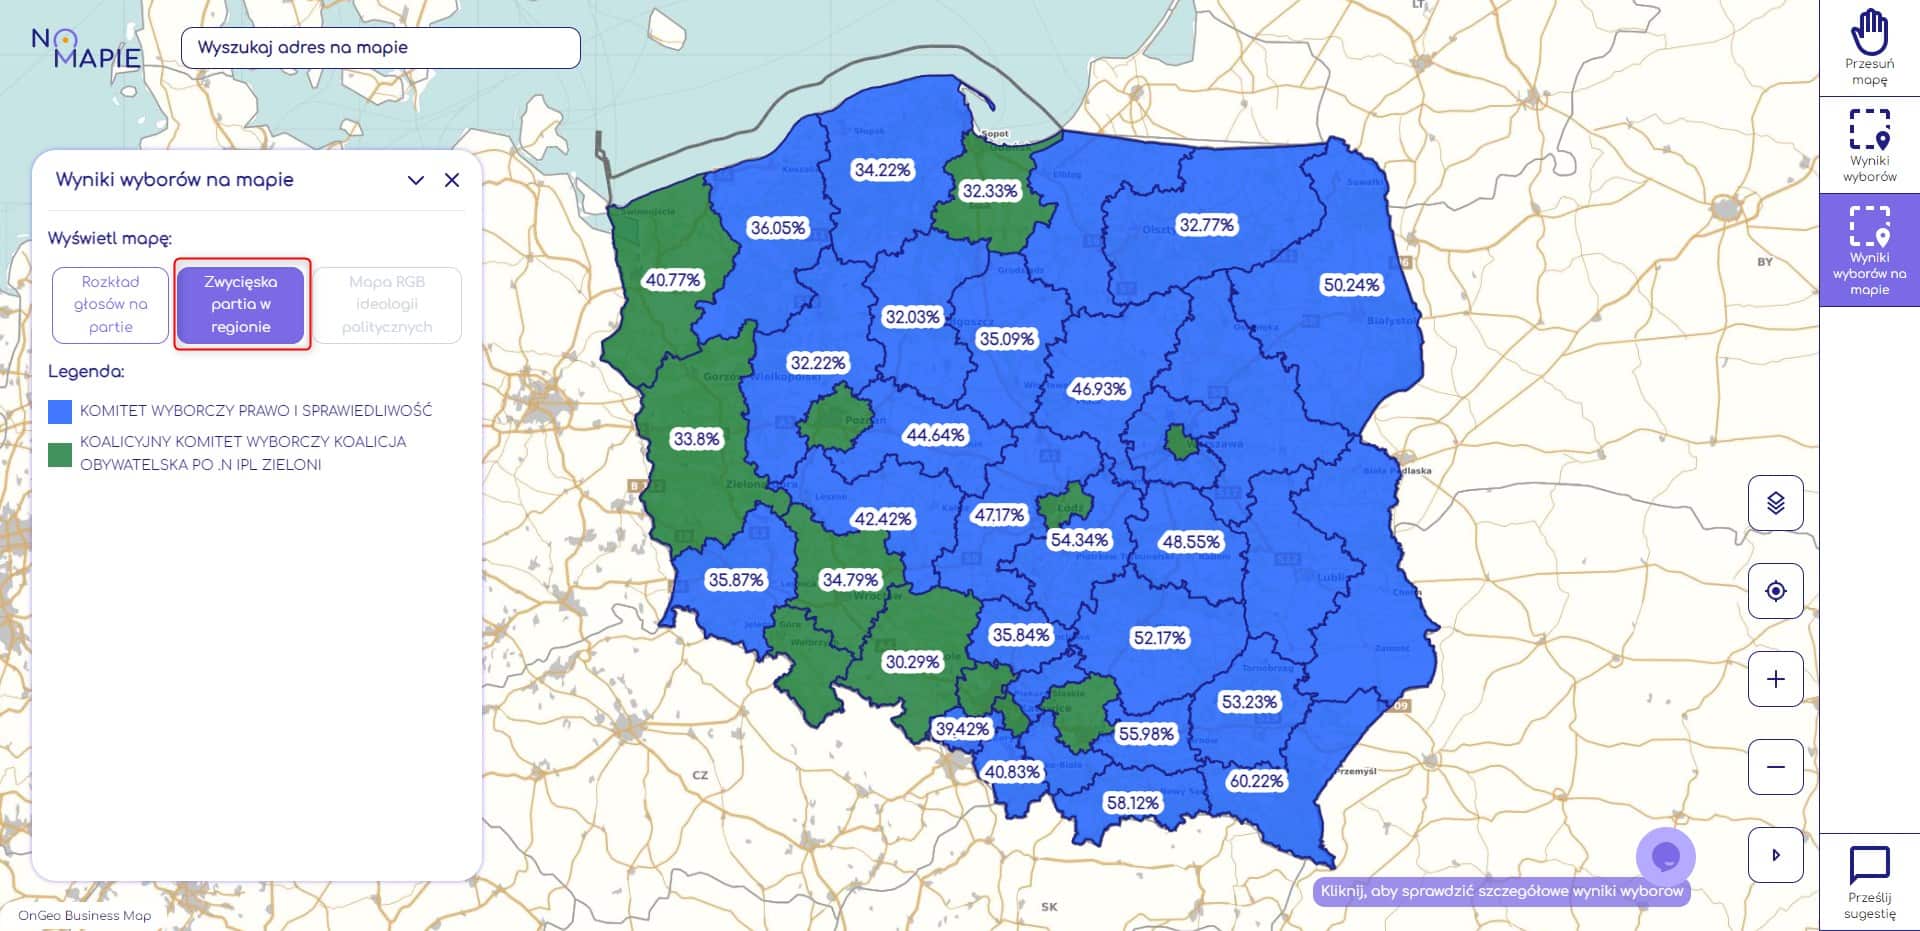 Mapa wyborów, która partia zwyciężyła w poszczególnych okręgach wyborczych